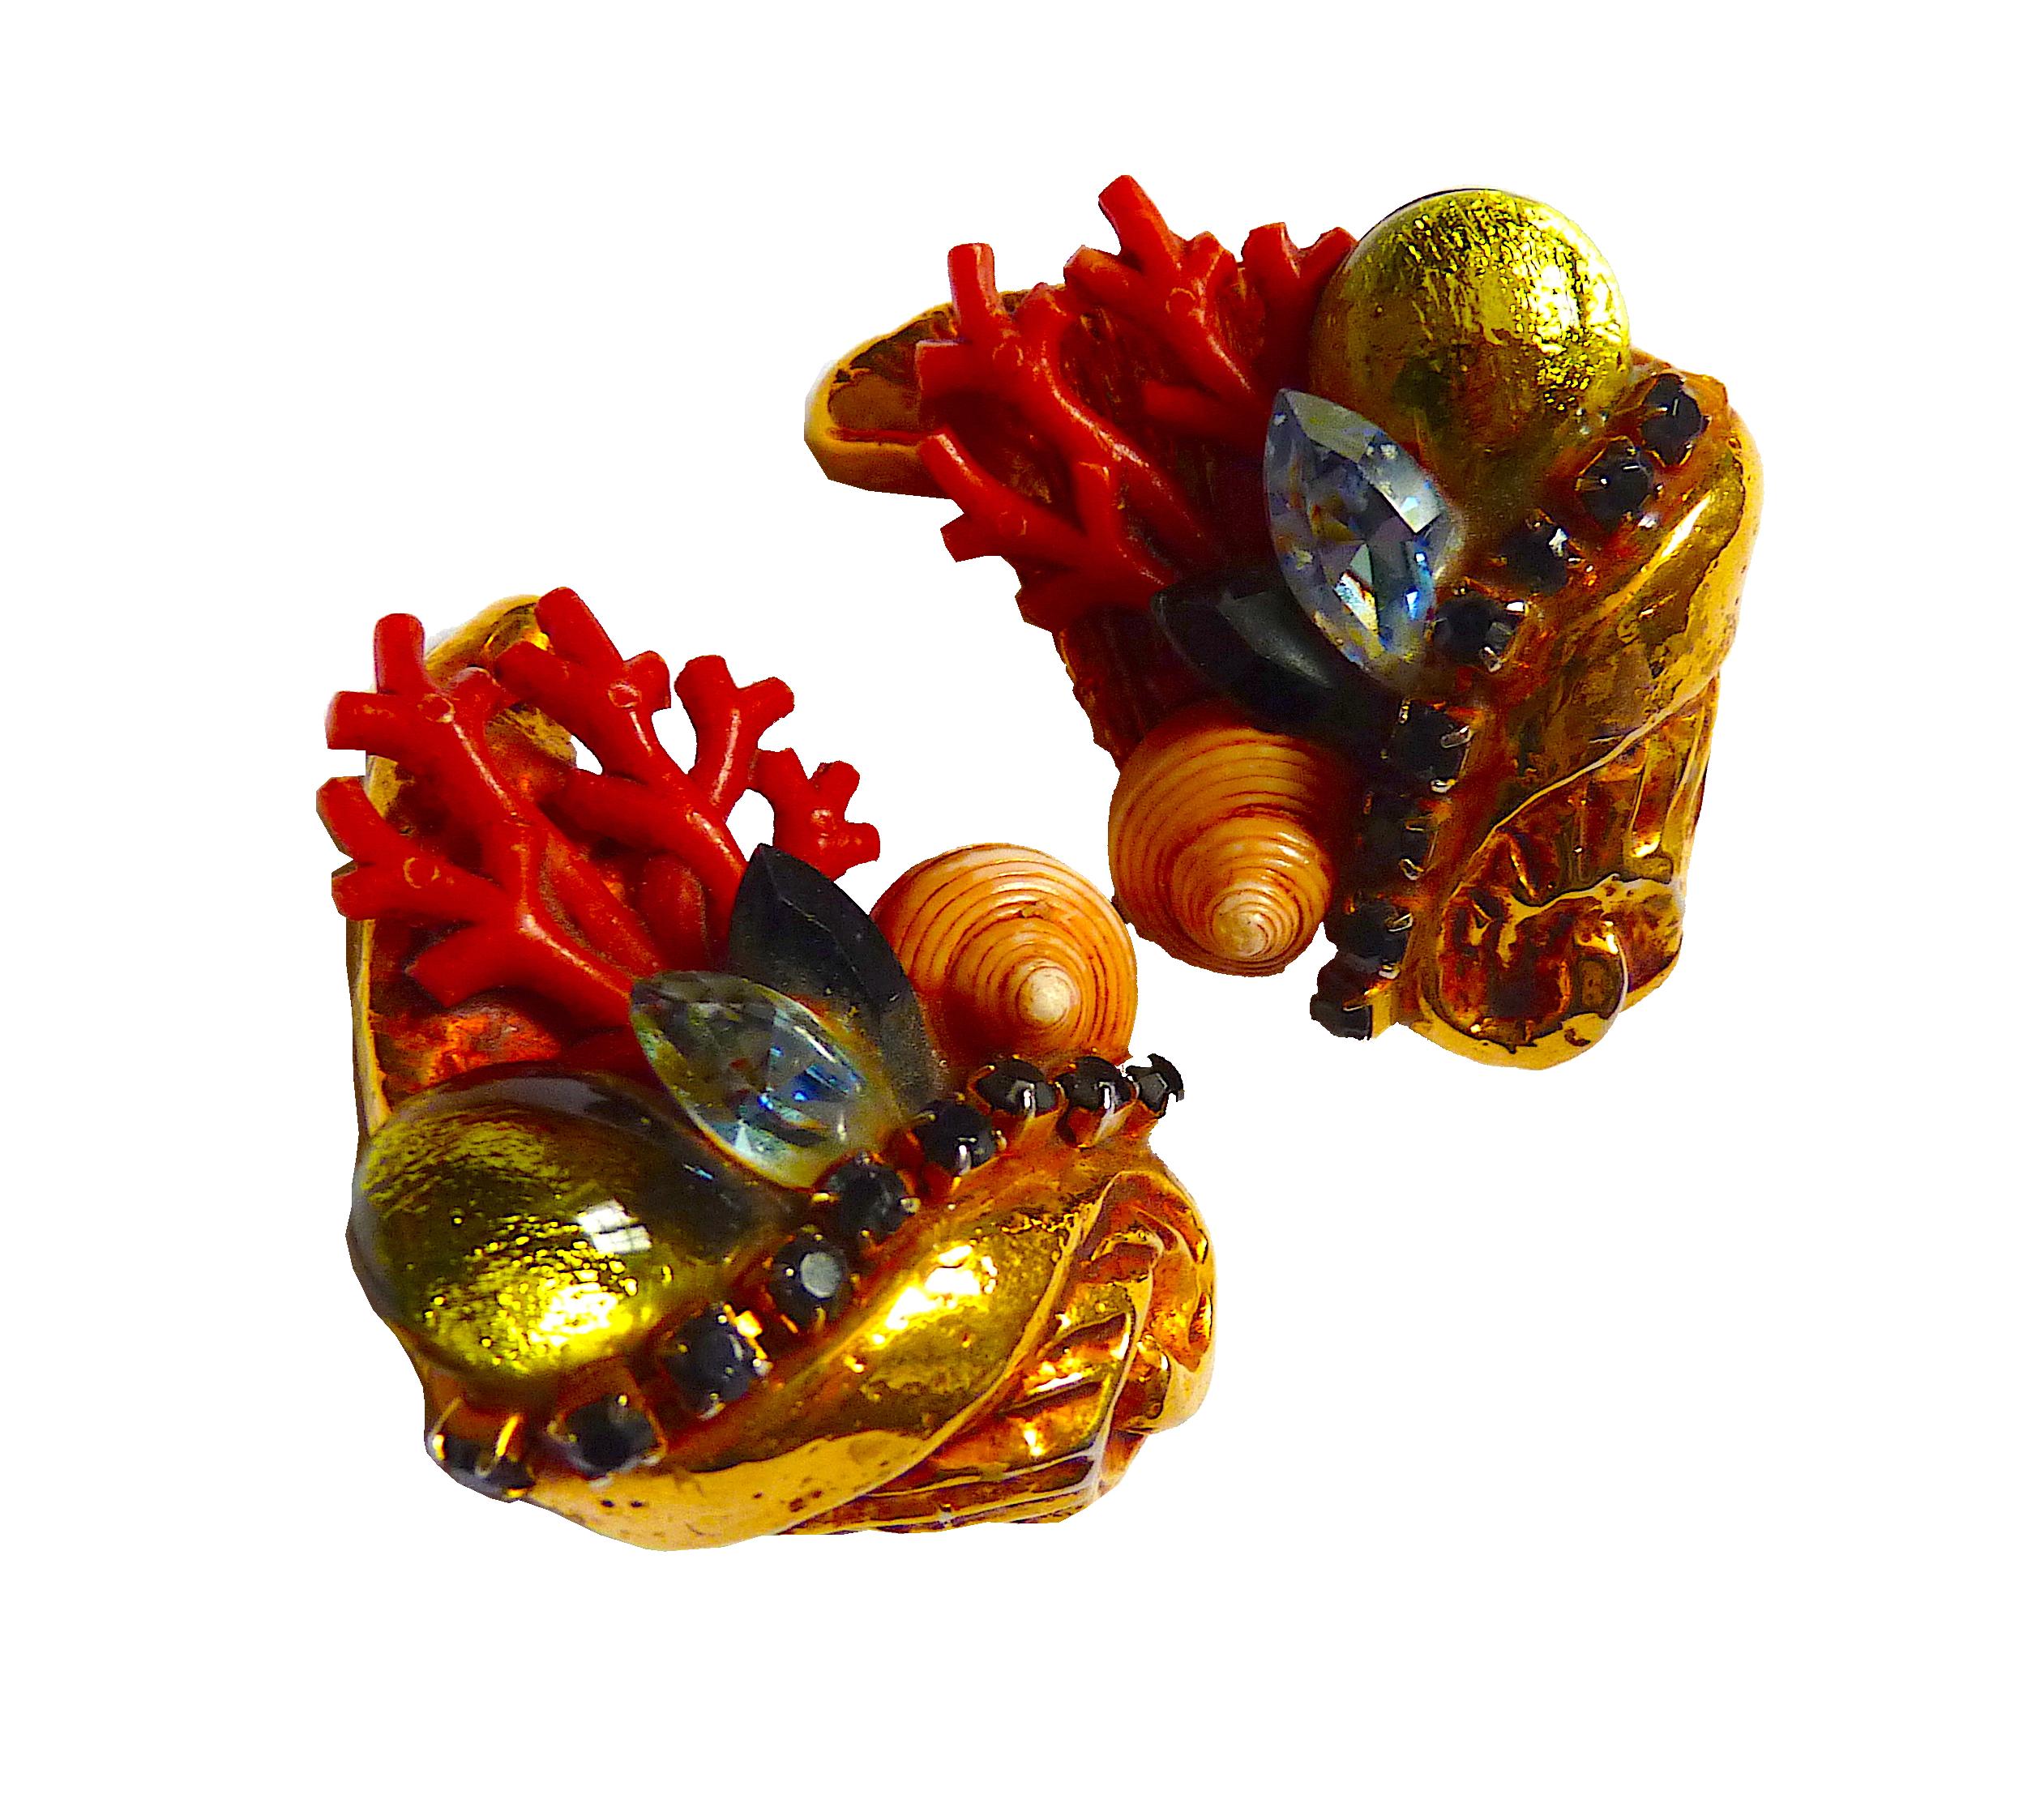 Boucles d'oreilles à clip Kalinger Paris en métal doré ornées de coquillages naturels exquis, de perles de verre rouges et vertes, de cristaux bleus et verts, vintage des années 1980

Signé KALINGER PARIS au dos de chaque clip

Condit : Très belle